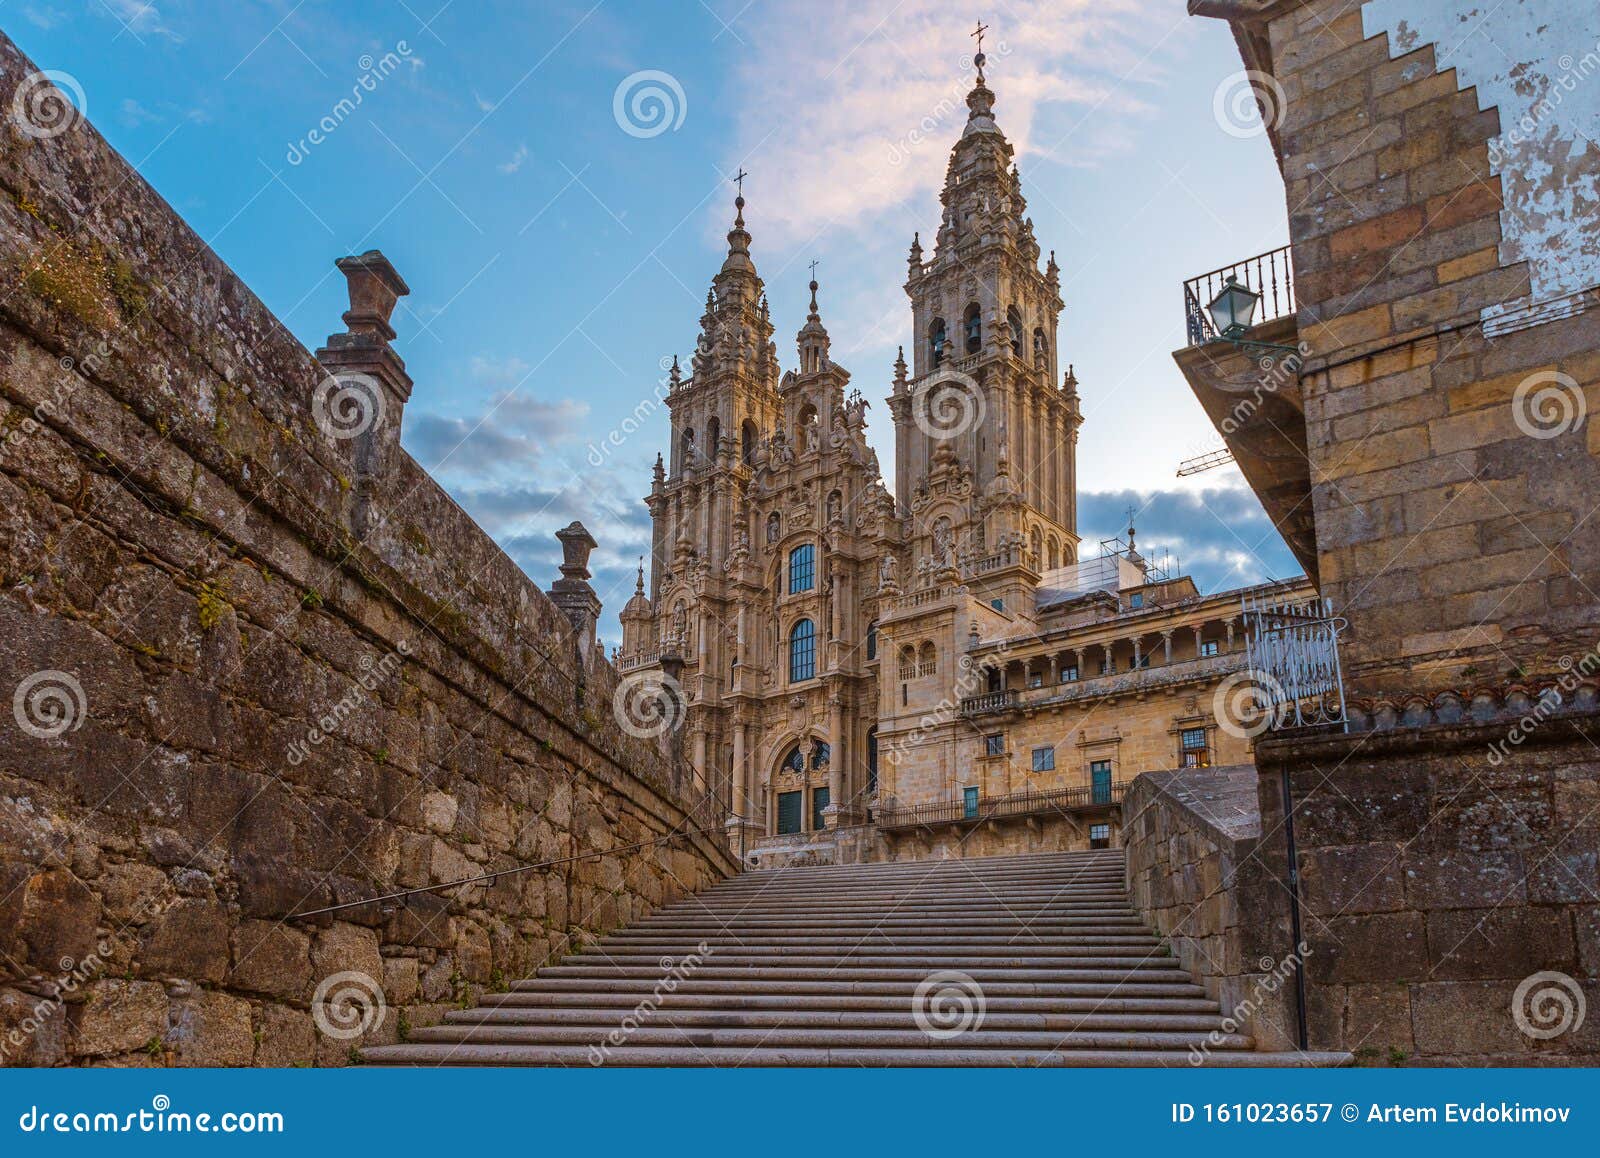 santiago de compostela cathedral, galicia, spain